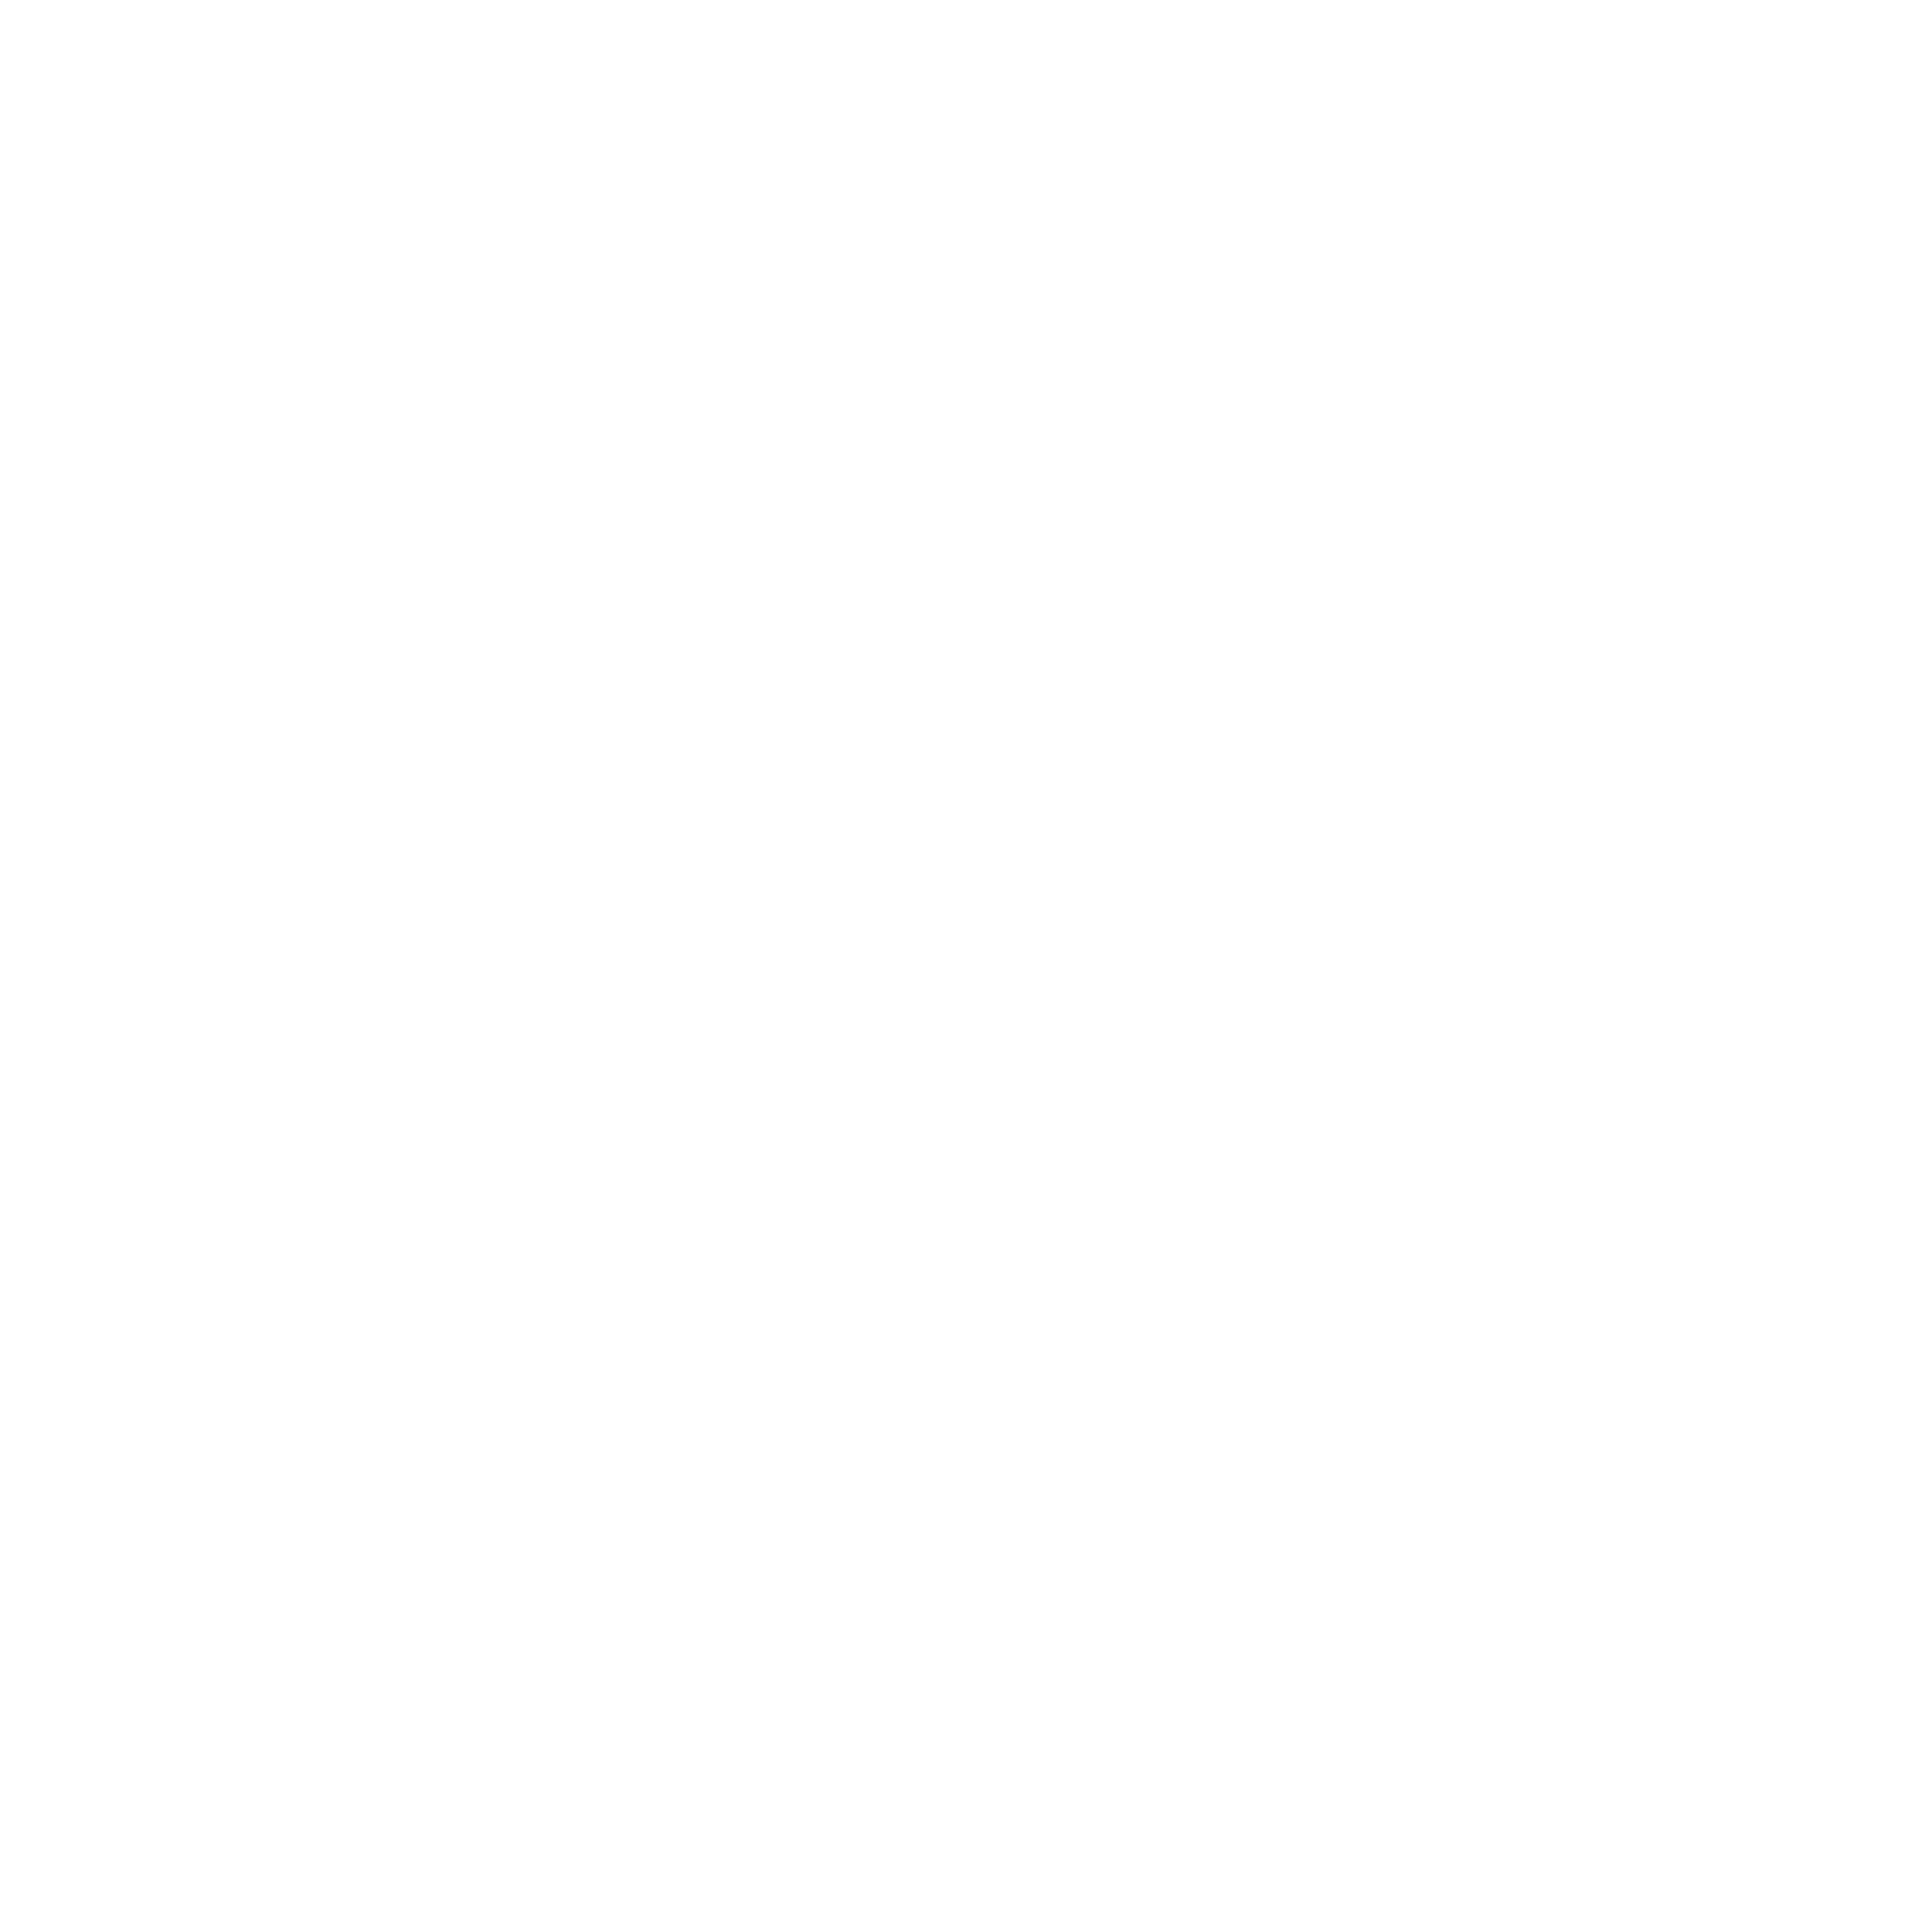 Never Offline